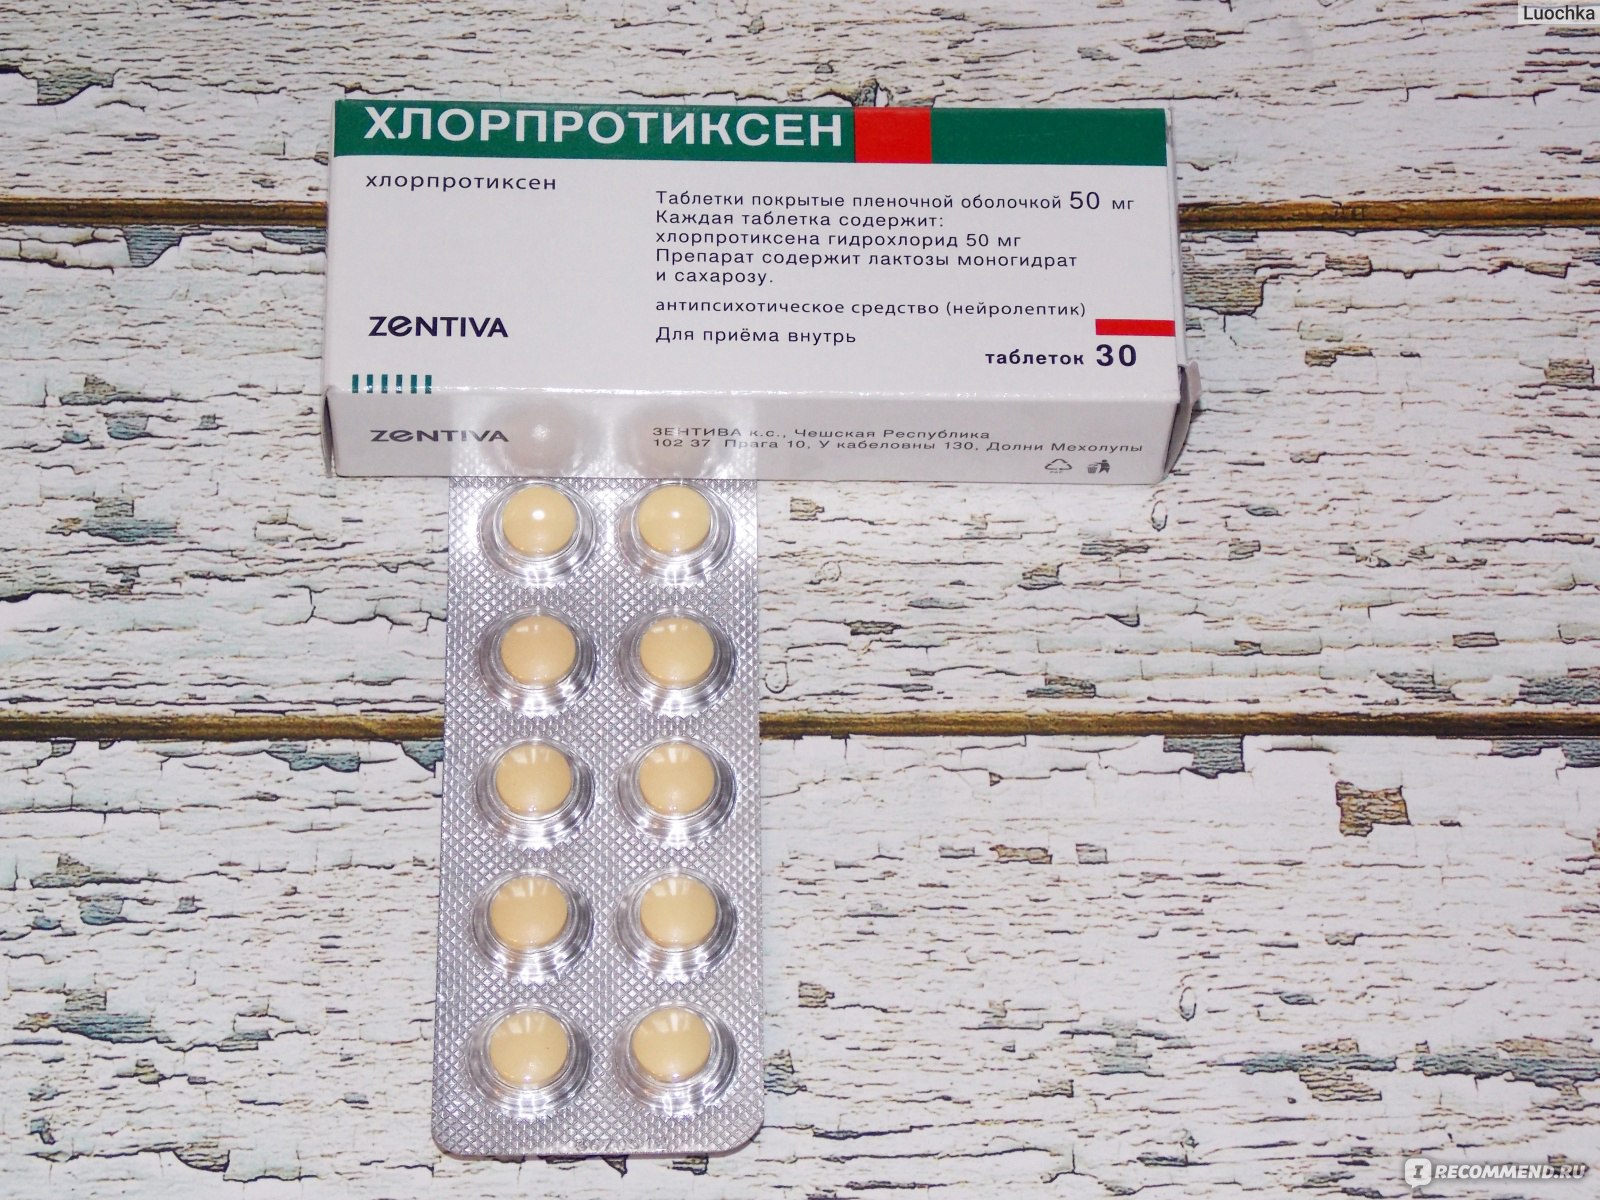 Лекарственный препарат Zentiva Хлорпротиксен - «Хлорпротиксен .